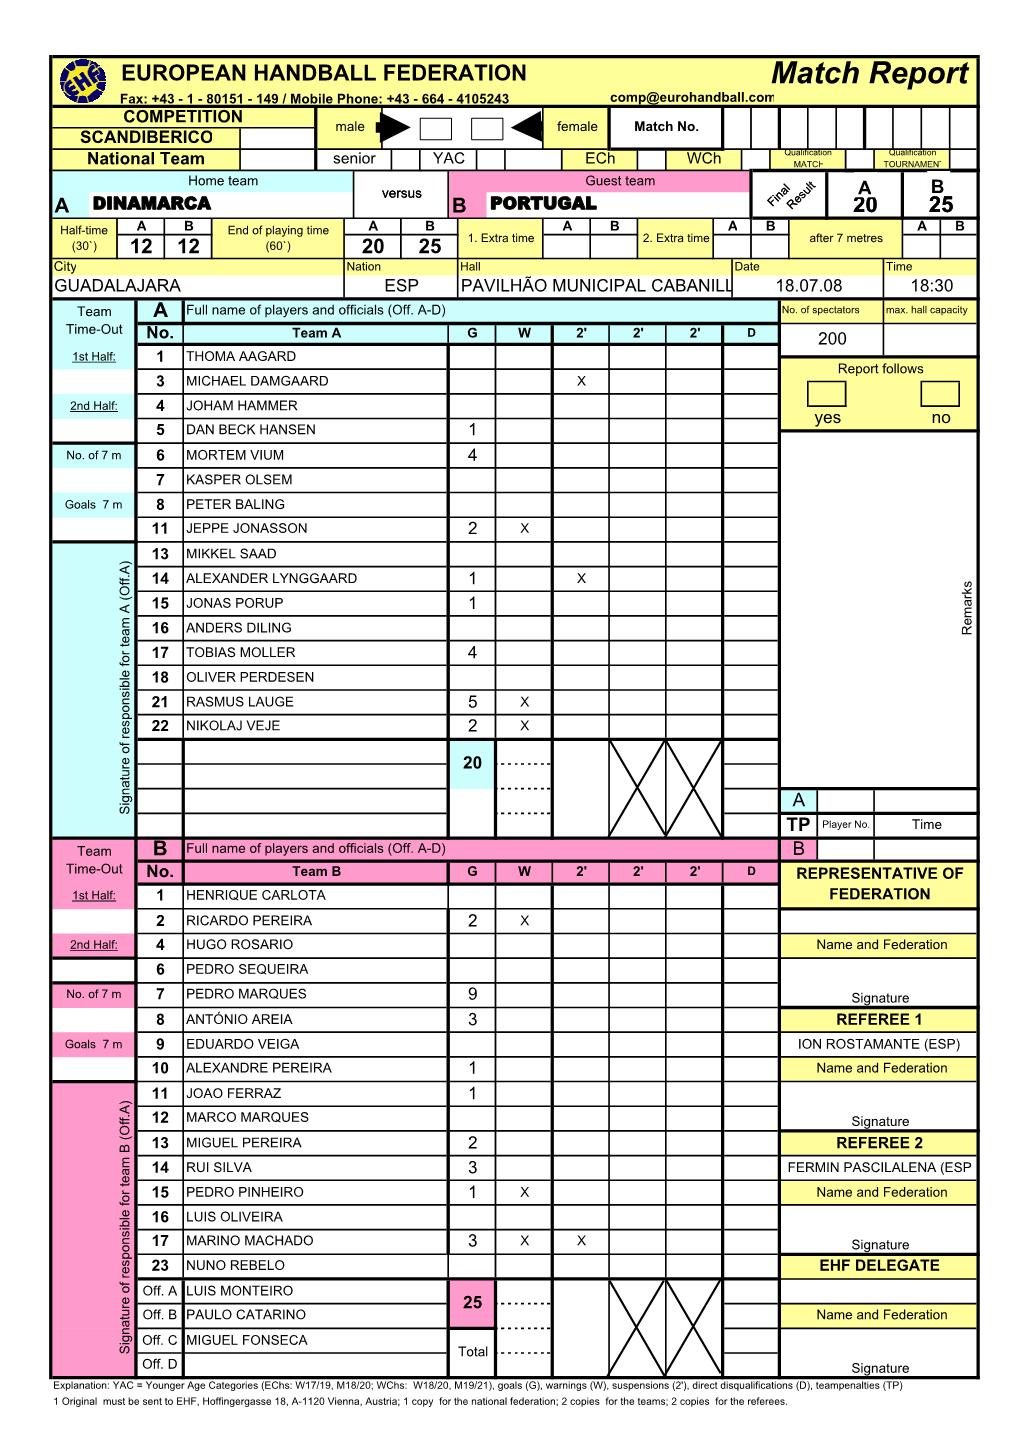 Match Report Fax: +43 - 1 - 80151 - 149 / Mobile Phone: +43 - 664 - 4105243 Comp@Eurohandball.Com COMPETITION Male Female Match No